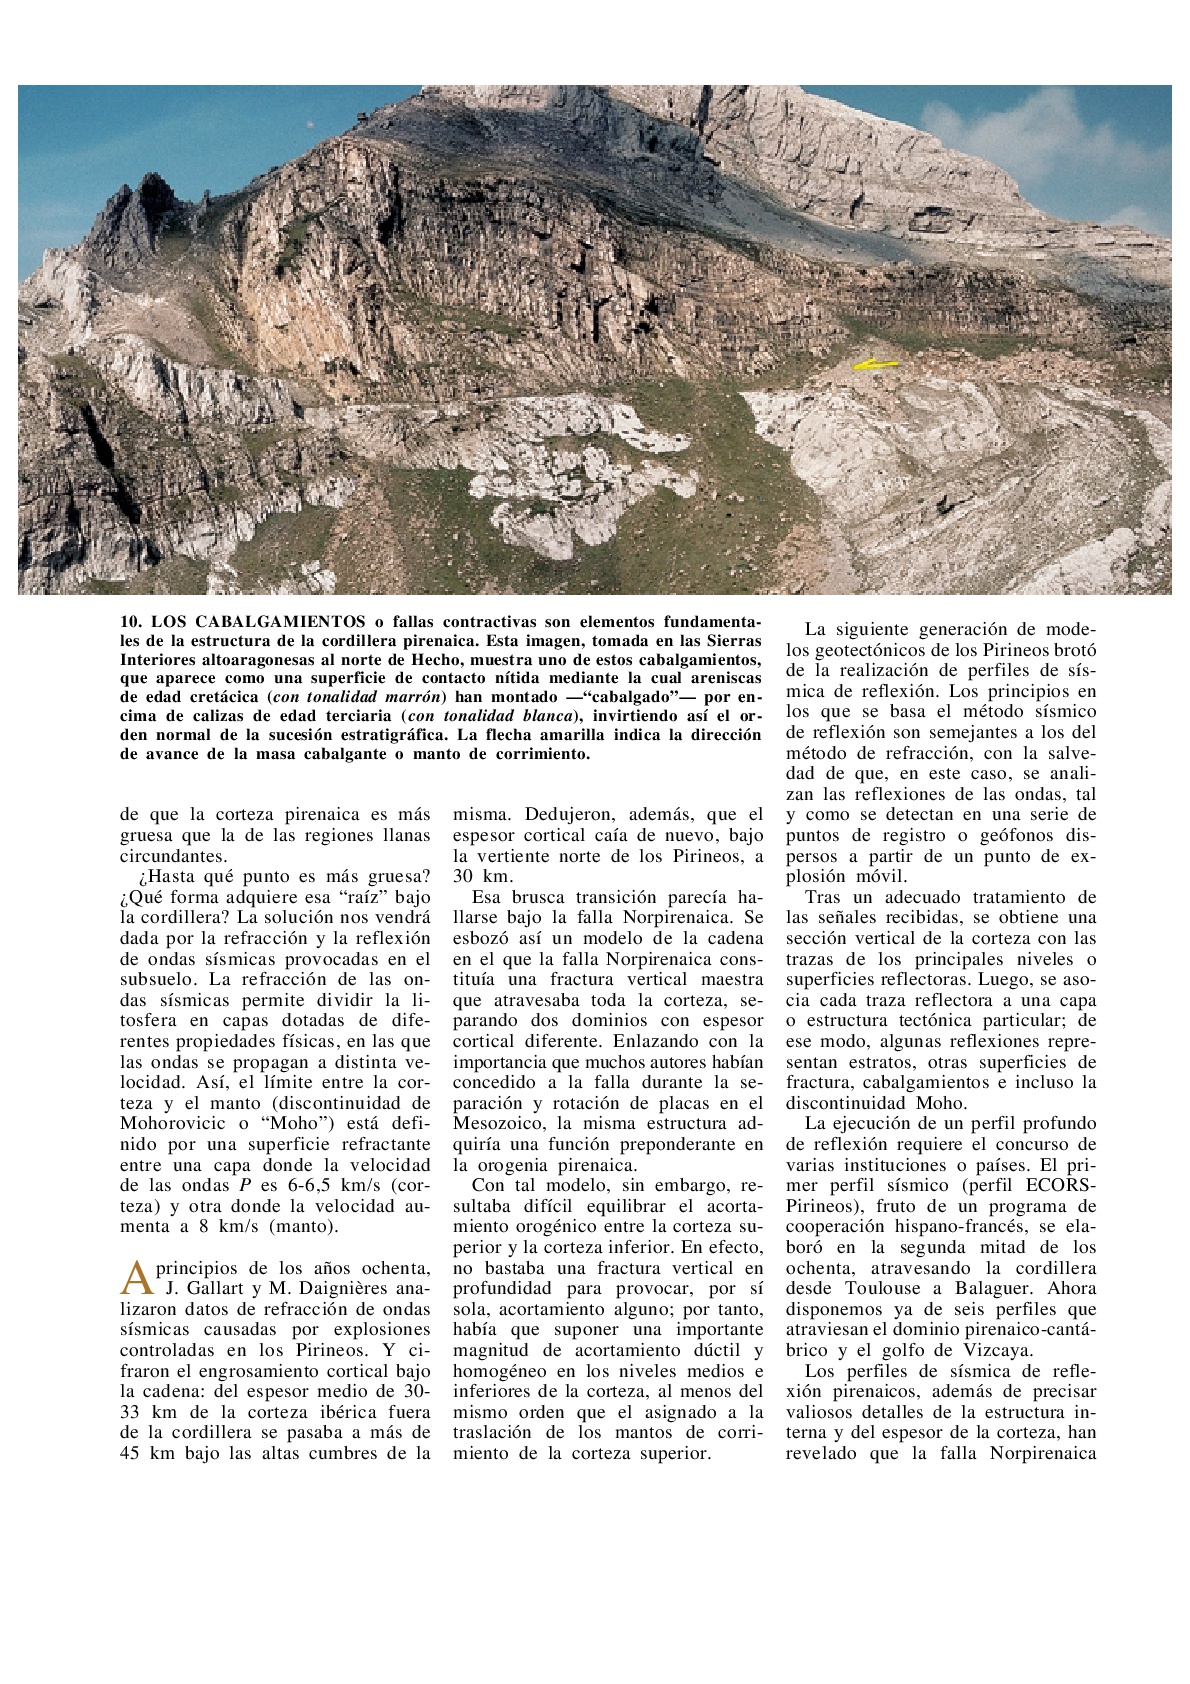 Geotectonica-de-los-Pirineos-009